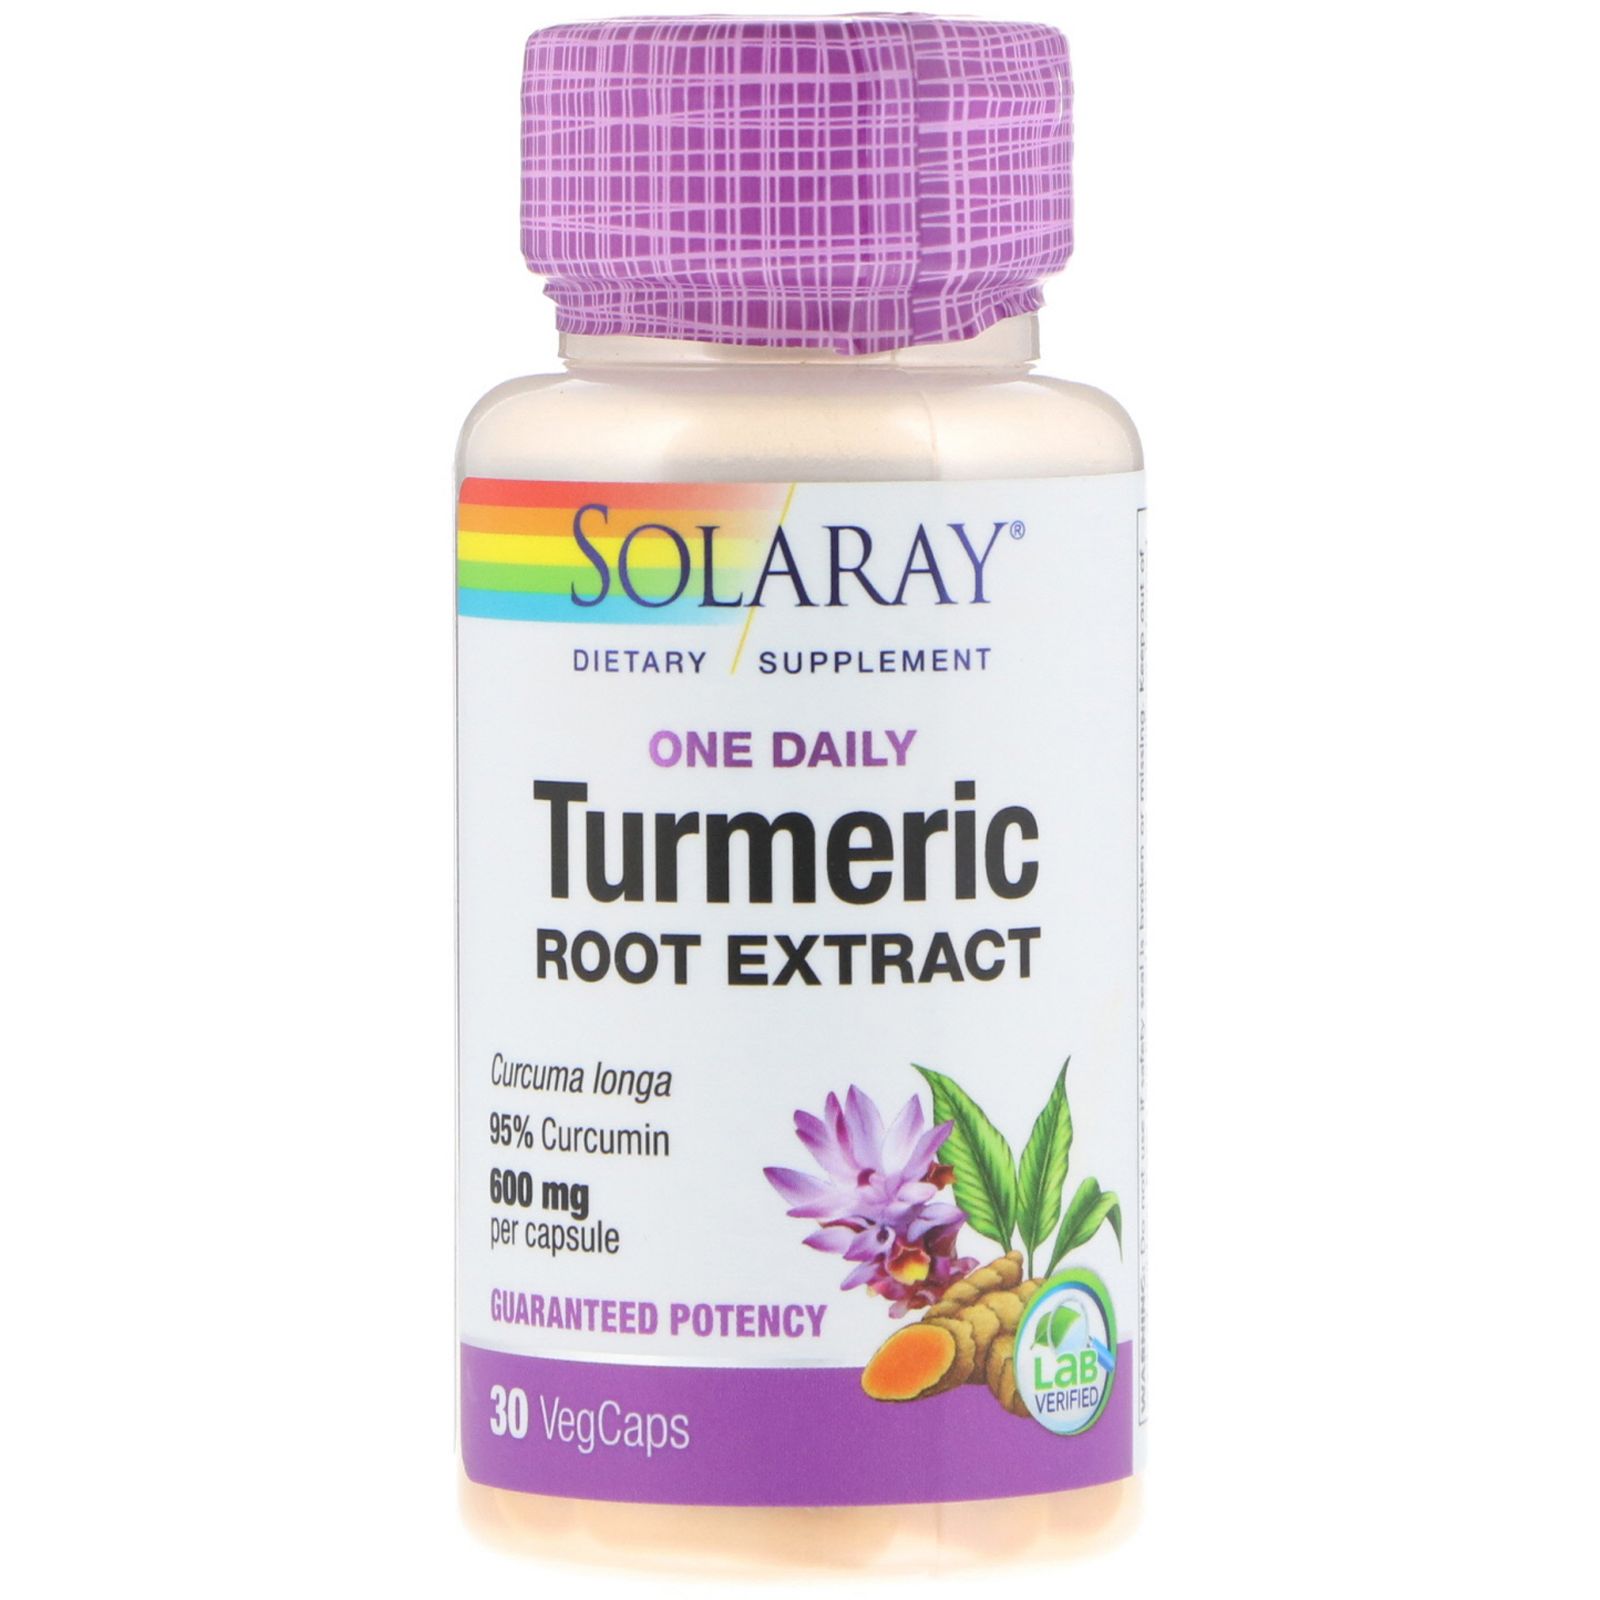 Solaray Turmeric Root Extract One Daily 600 mg 30 VegCaps